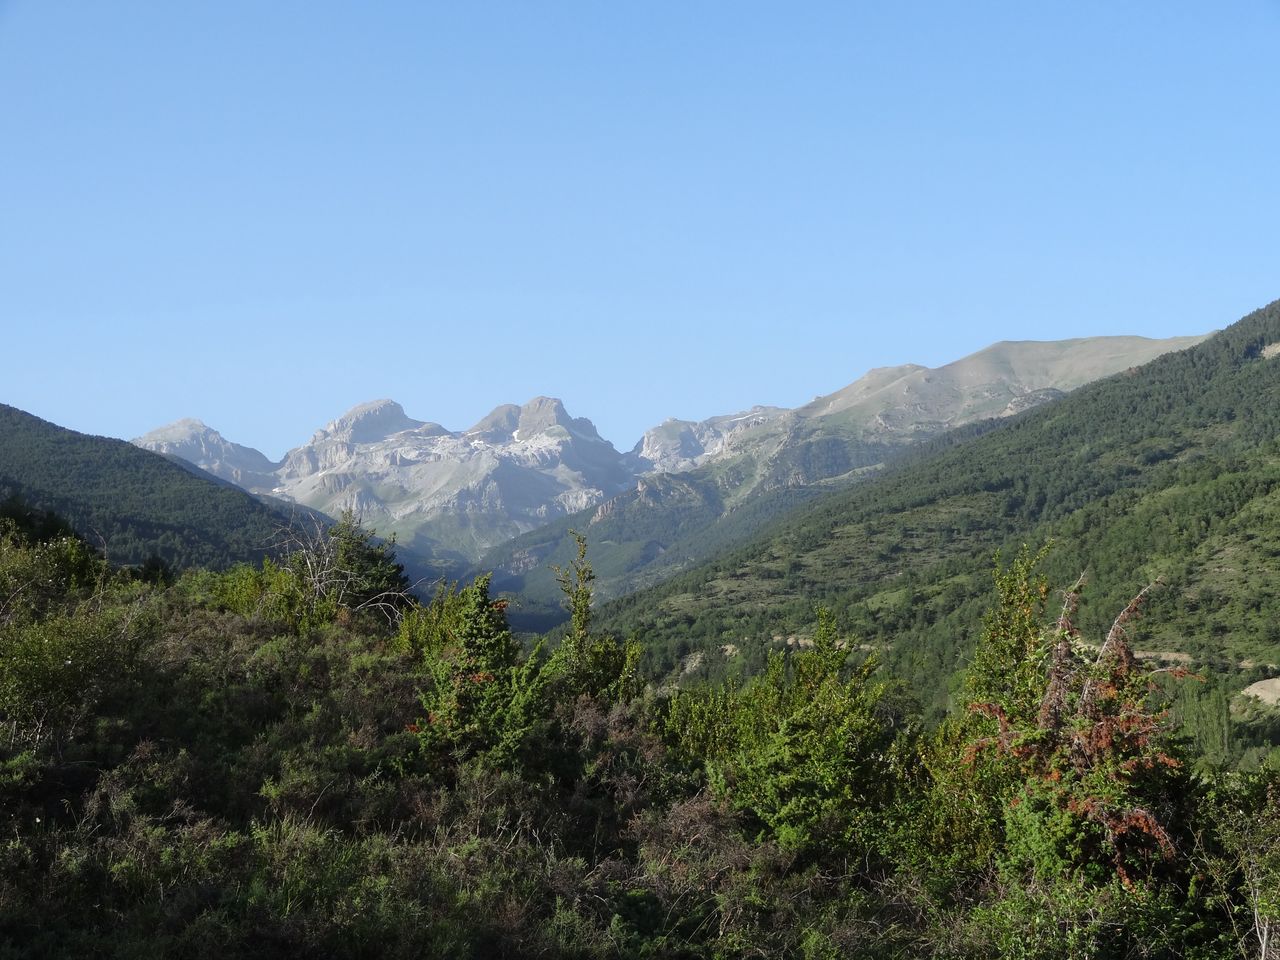 British tourist found dead near summit in Spanish Pyrenees